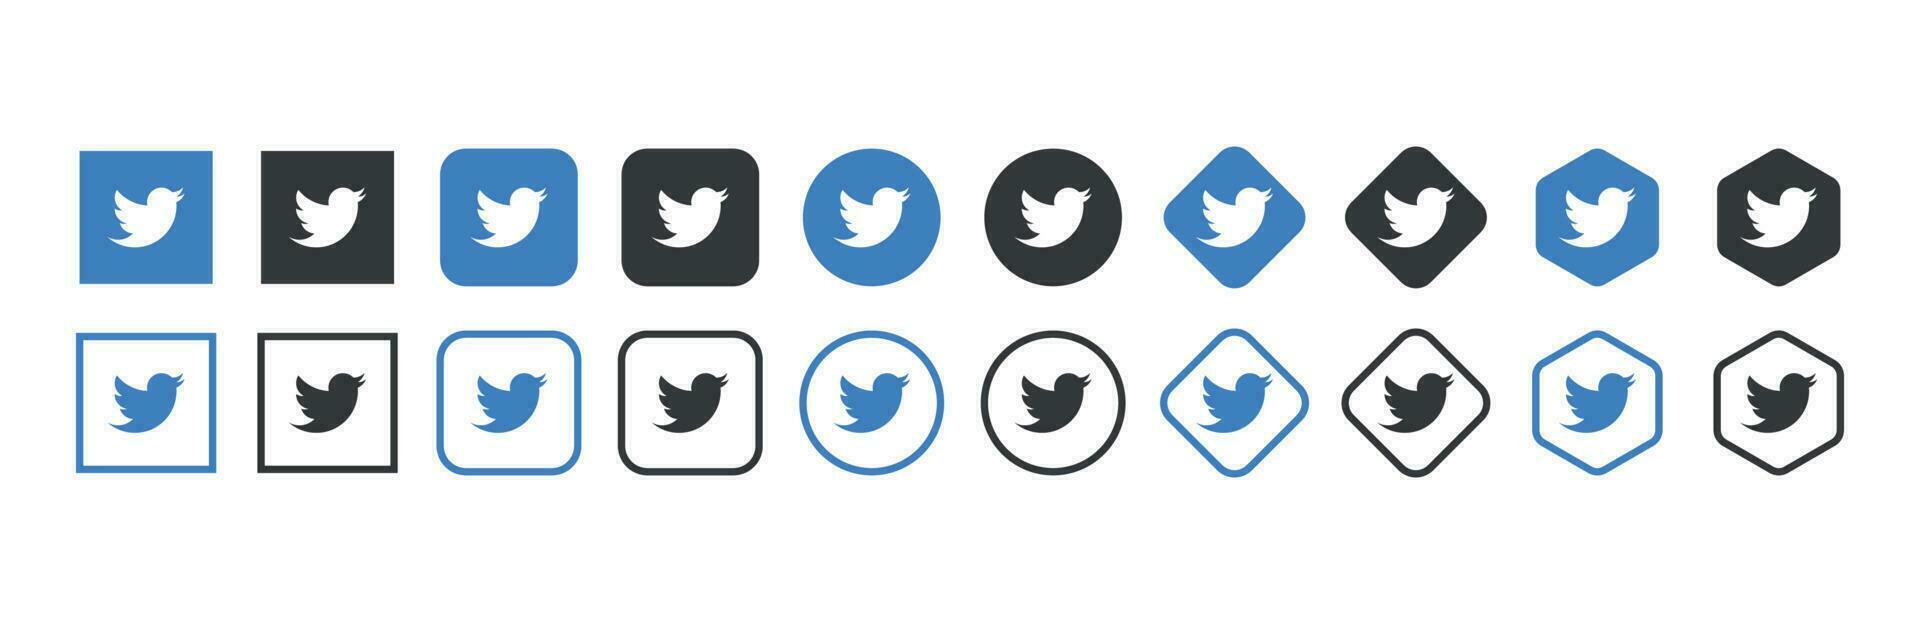 Twitter Logo Symbol im verschiedene Formen, Sozial Medien Symbol vektor